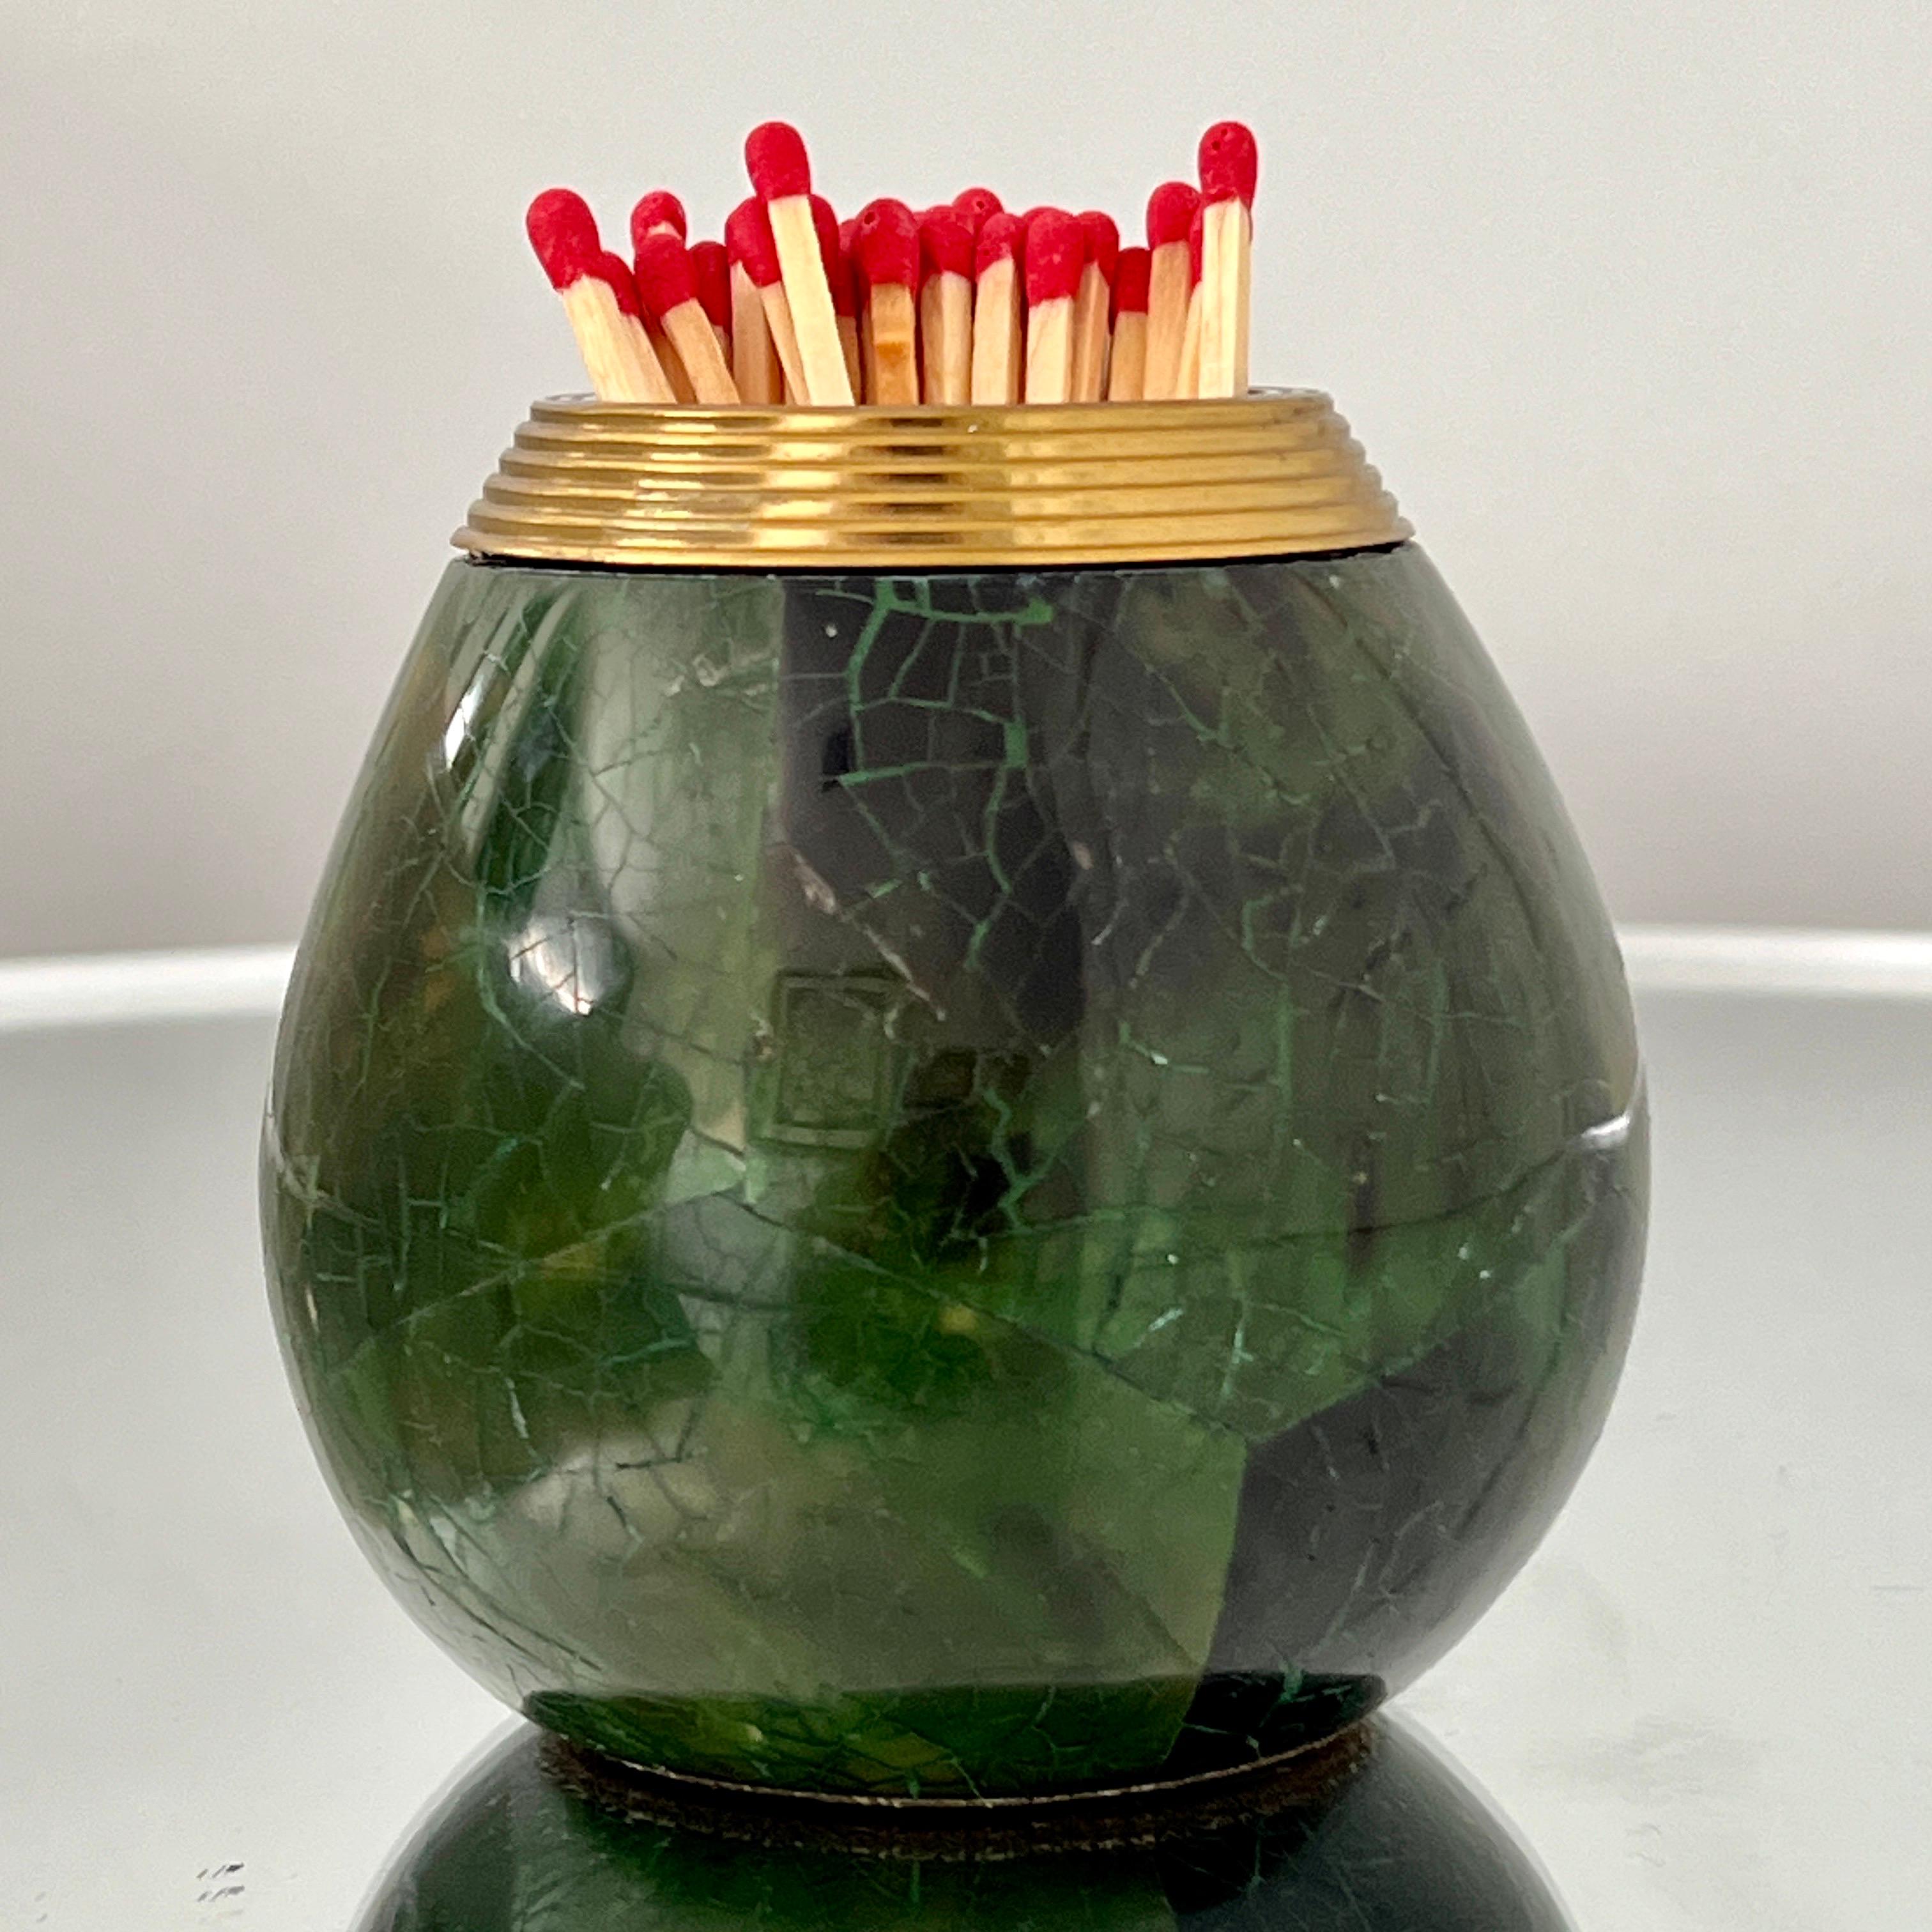 Organic Modern Penshell and Brass Matchstick Holder by Maitland Smith